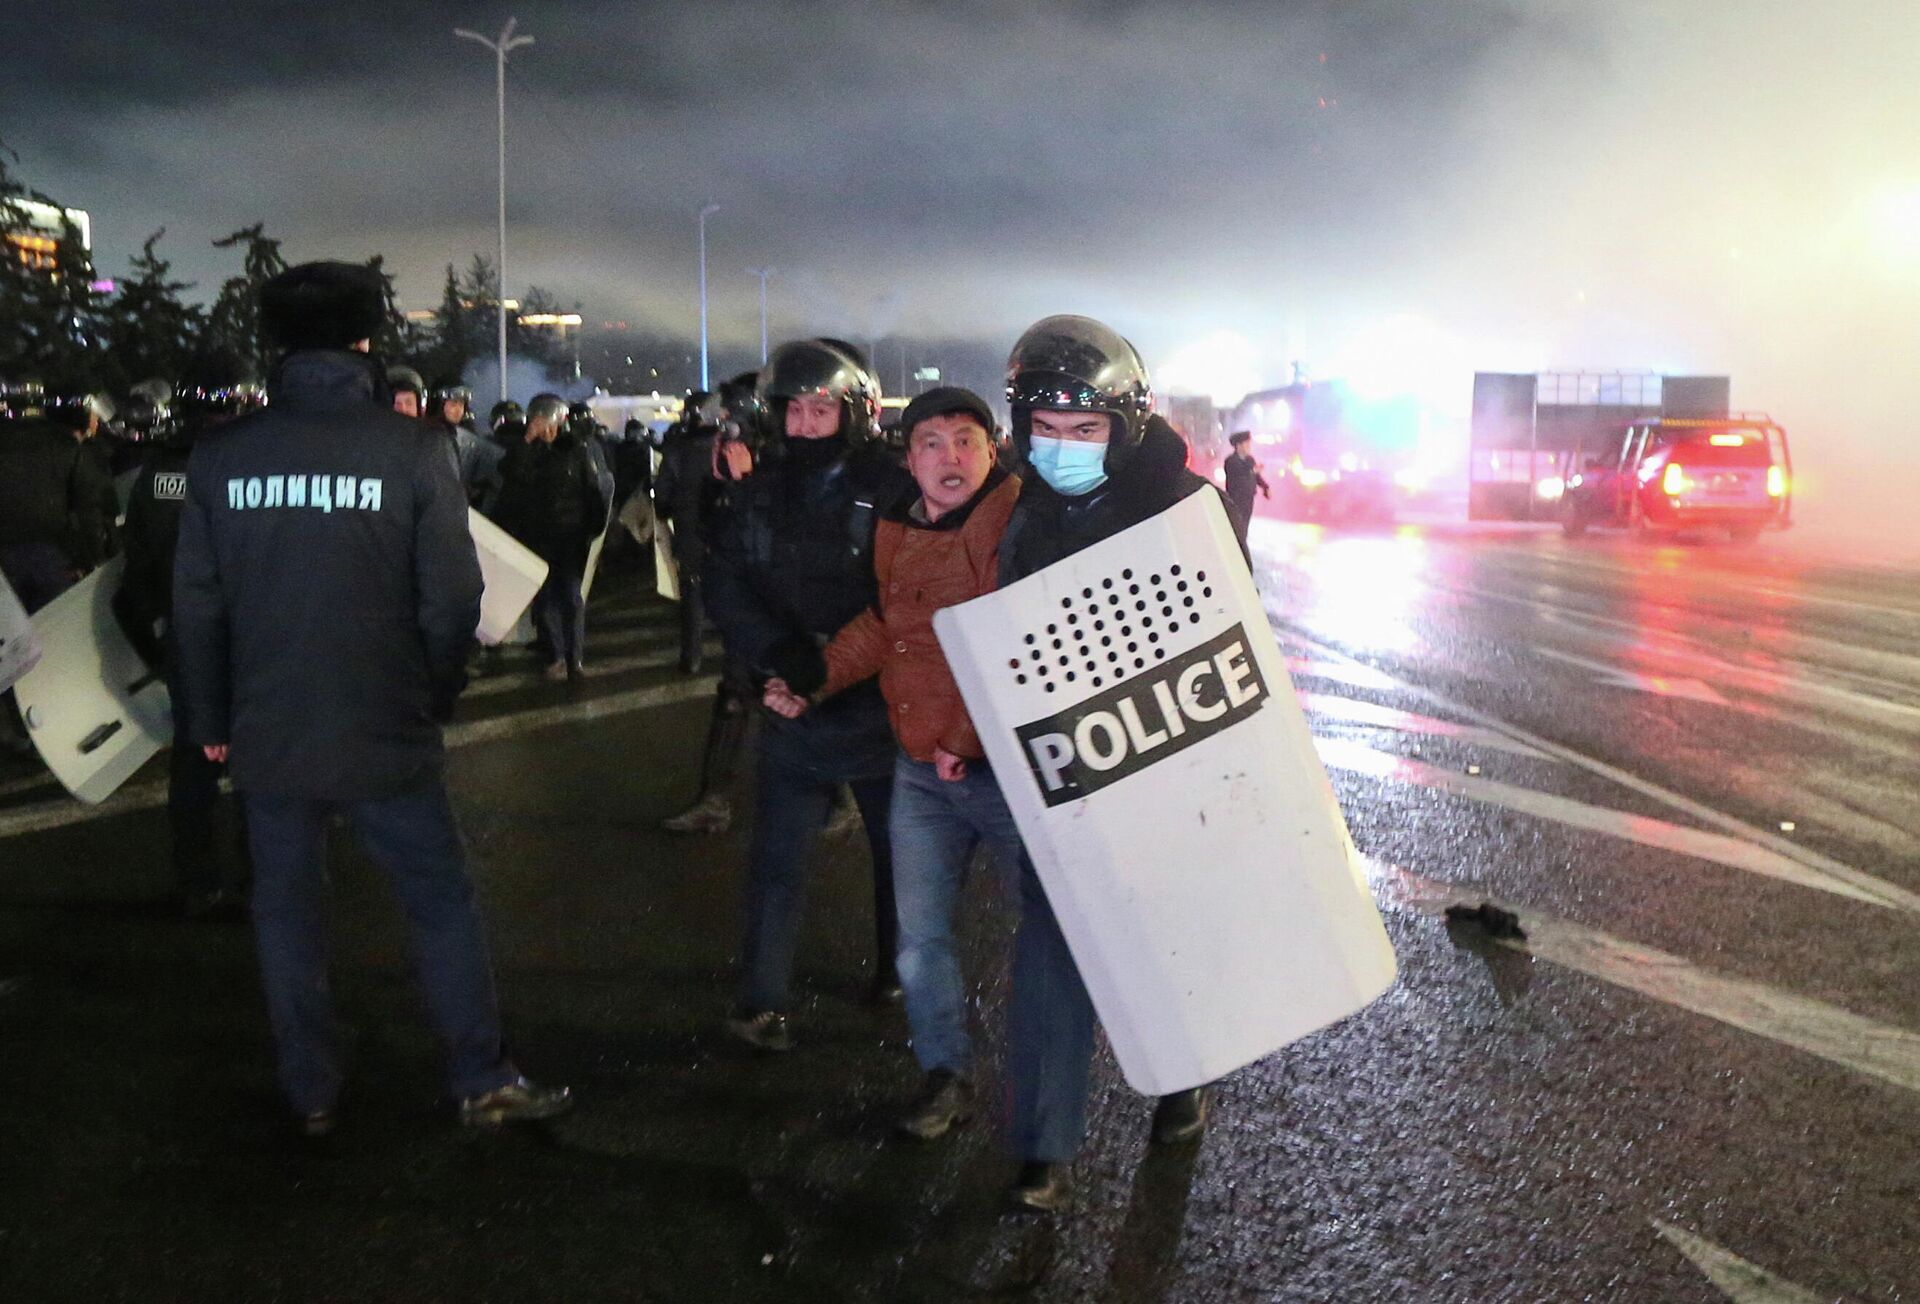 Газовые протесты в Казахстане. Столкновения с полицией в Алма-Ате - Sputnik Грузия, 1920, 05.01.2022